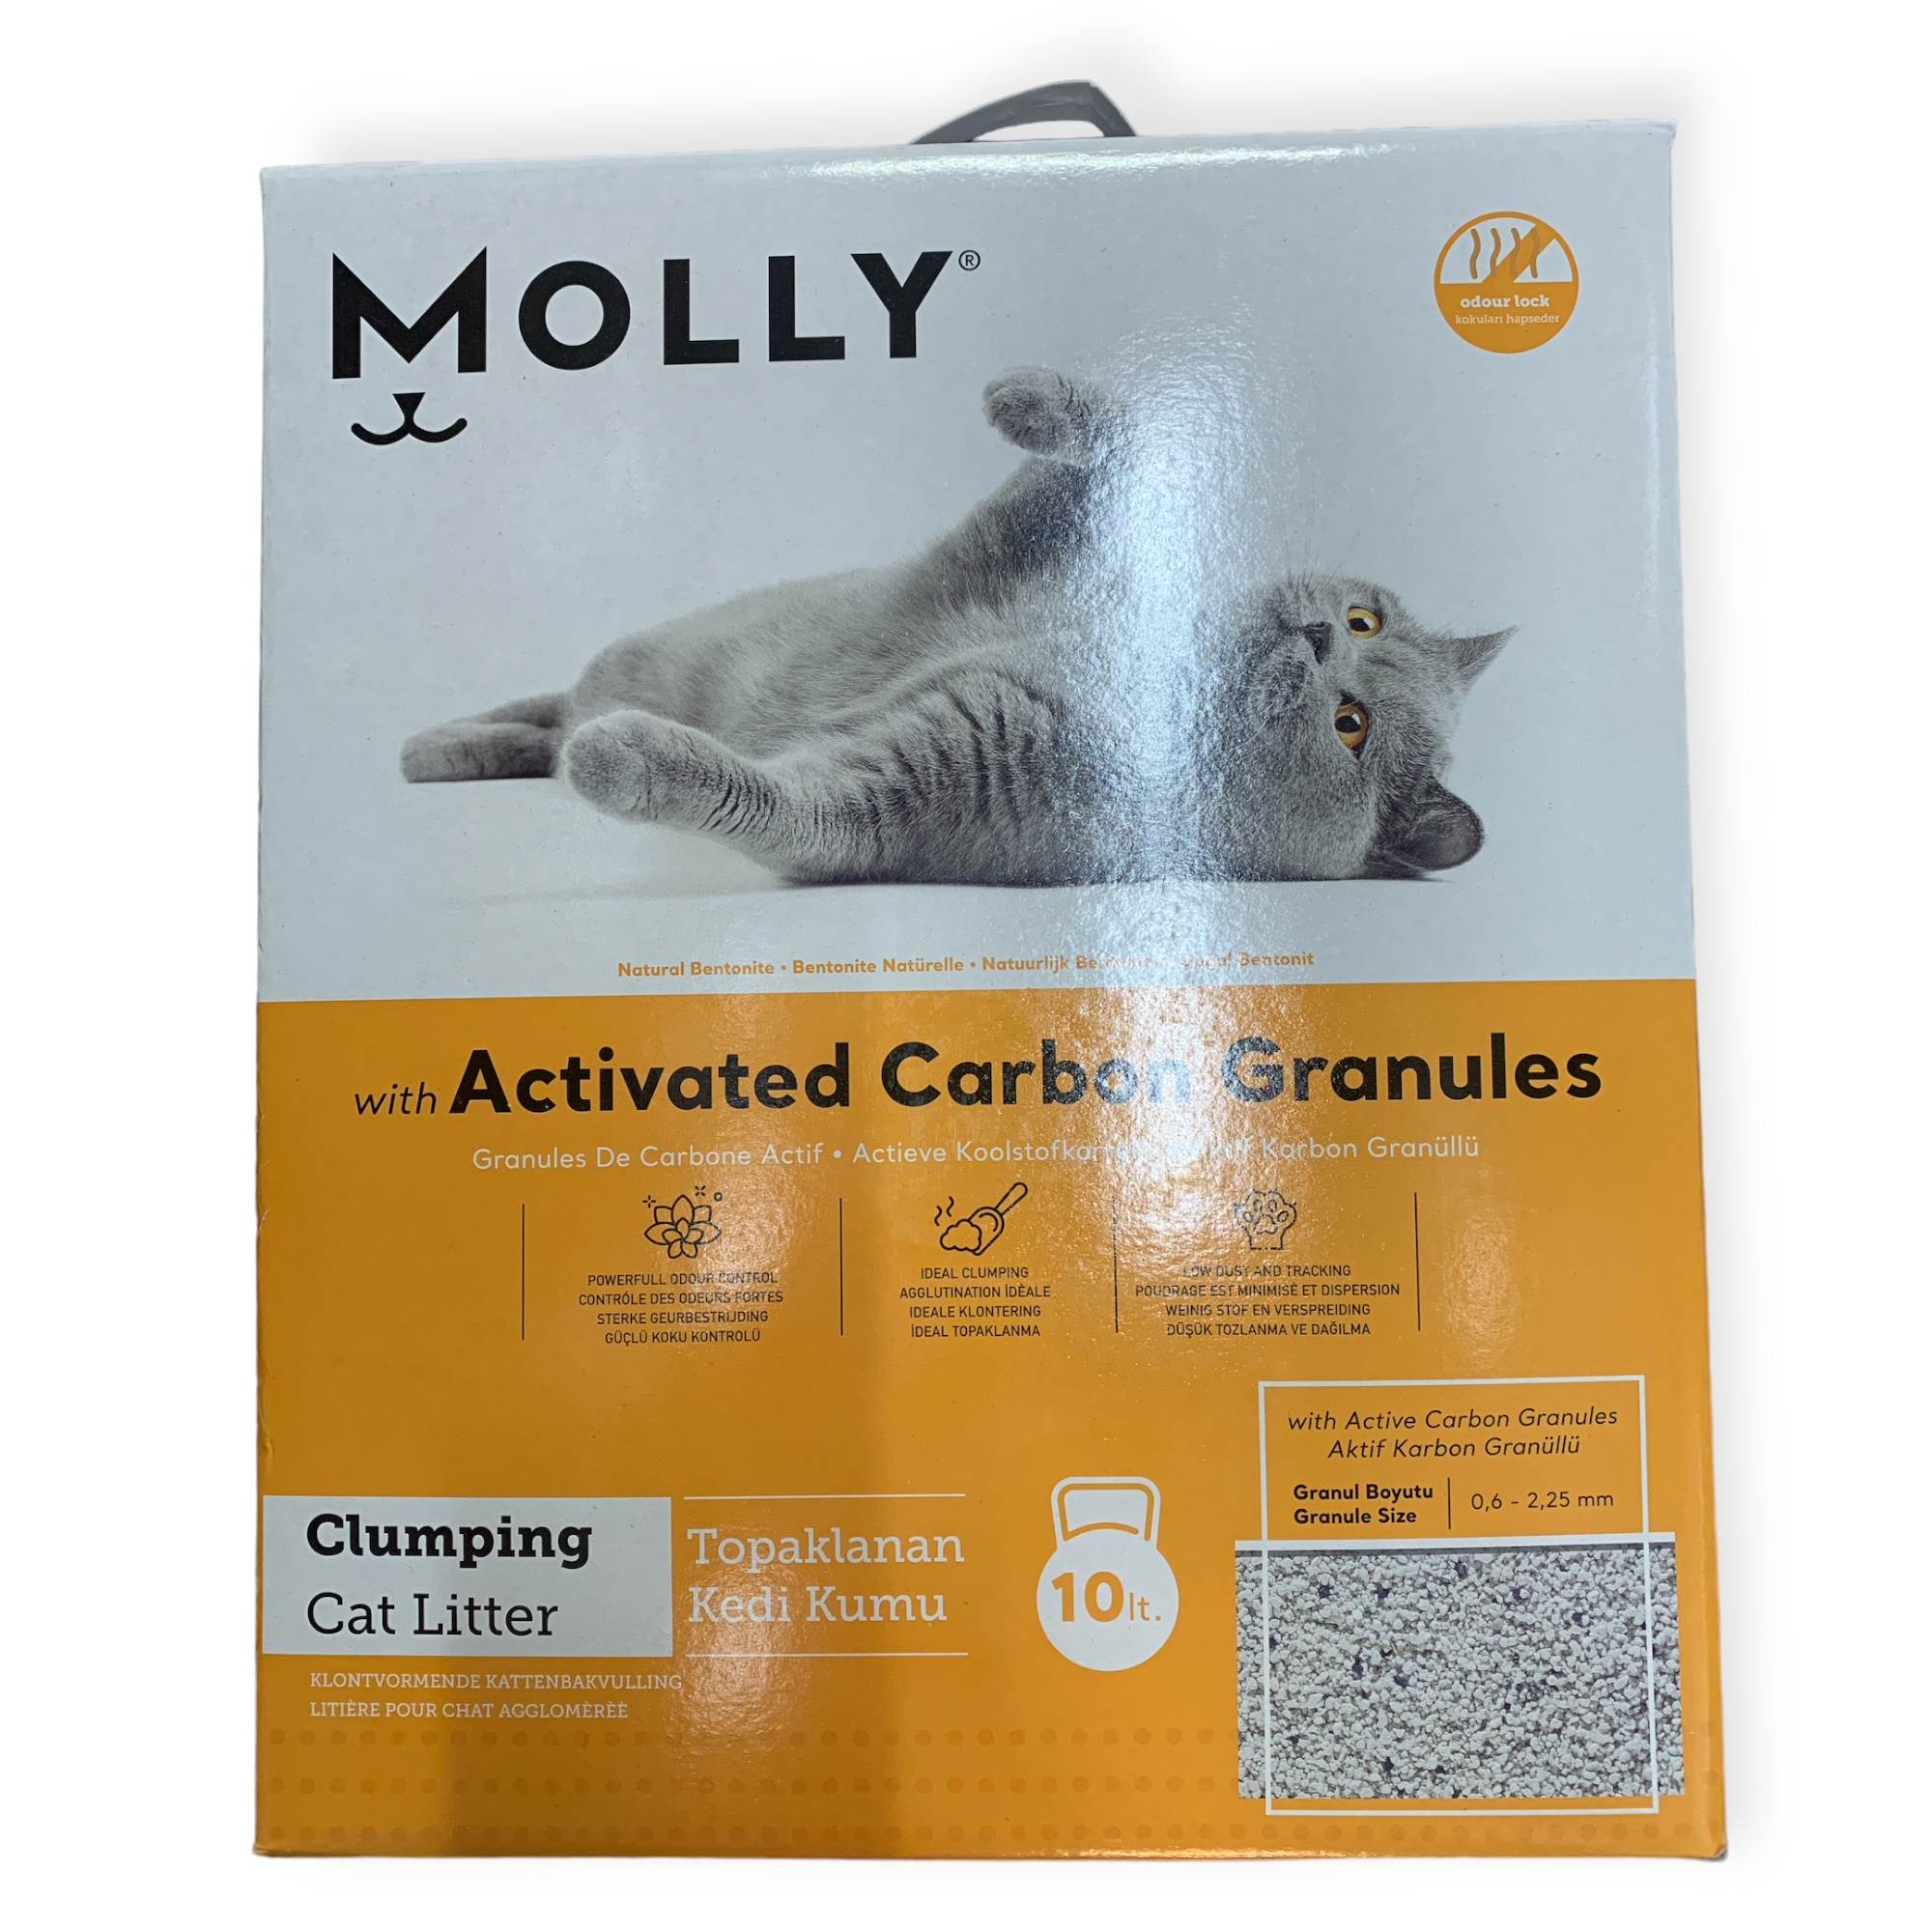 MOLLY חול מעוצב באריזת קרטון, 10 קילוגרם, מולי פחם באריזת קרטון, כתום לחתולים